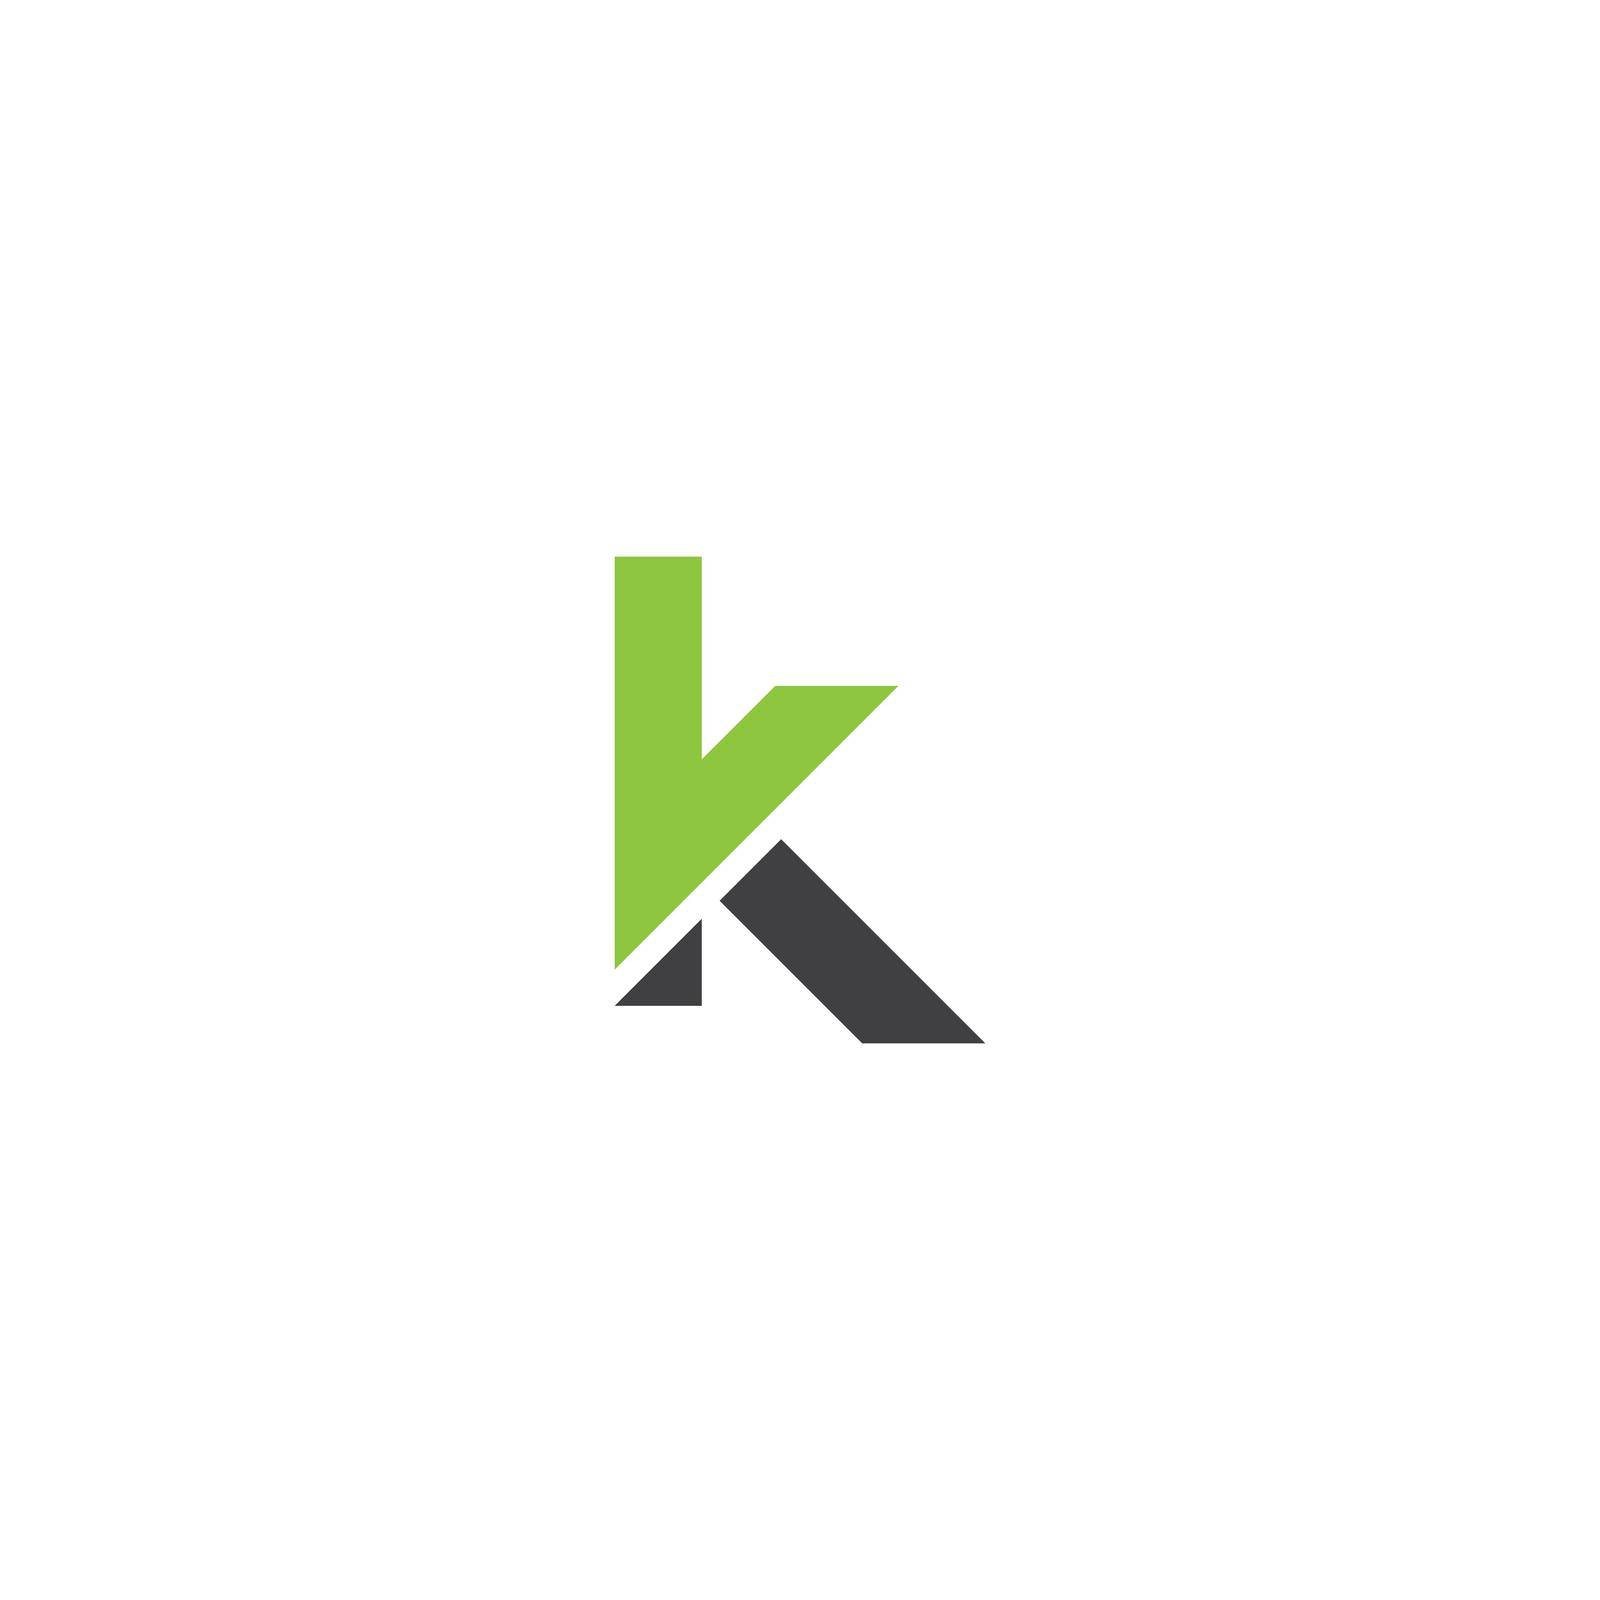 K letter logo by awk